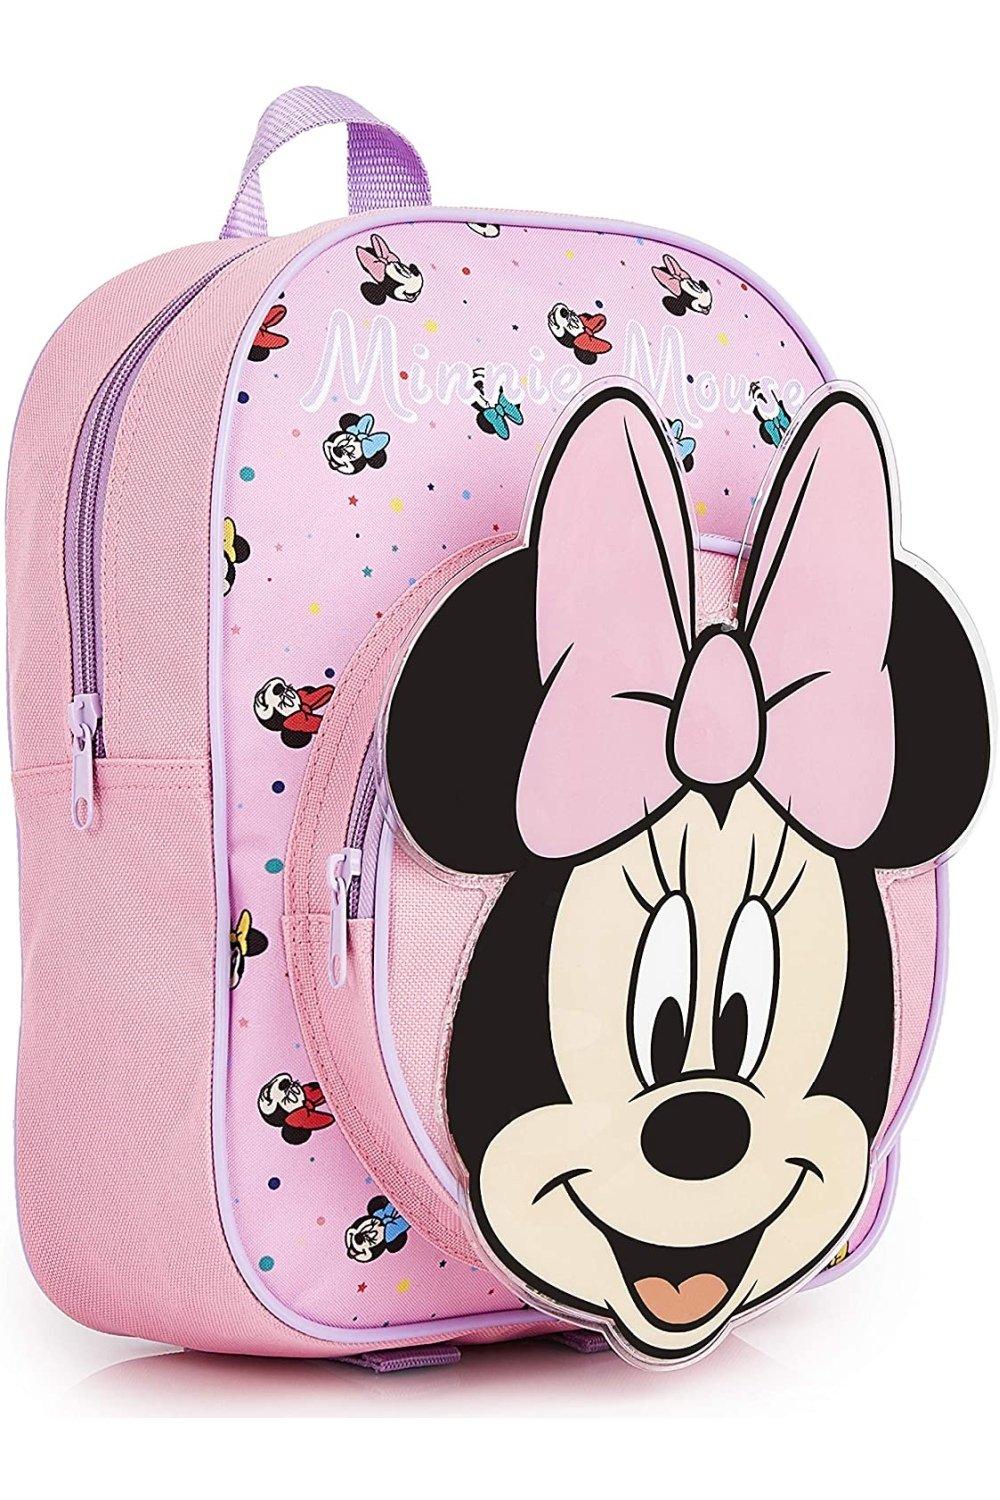 Школьная сумка Минни Маус Disney, розовый стежок рюкзак disney мультиколор